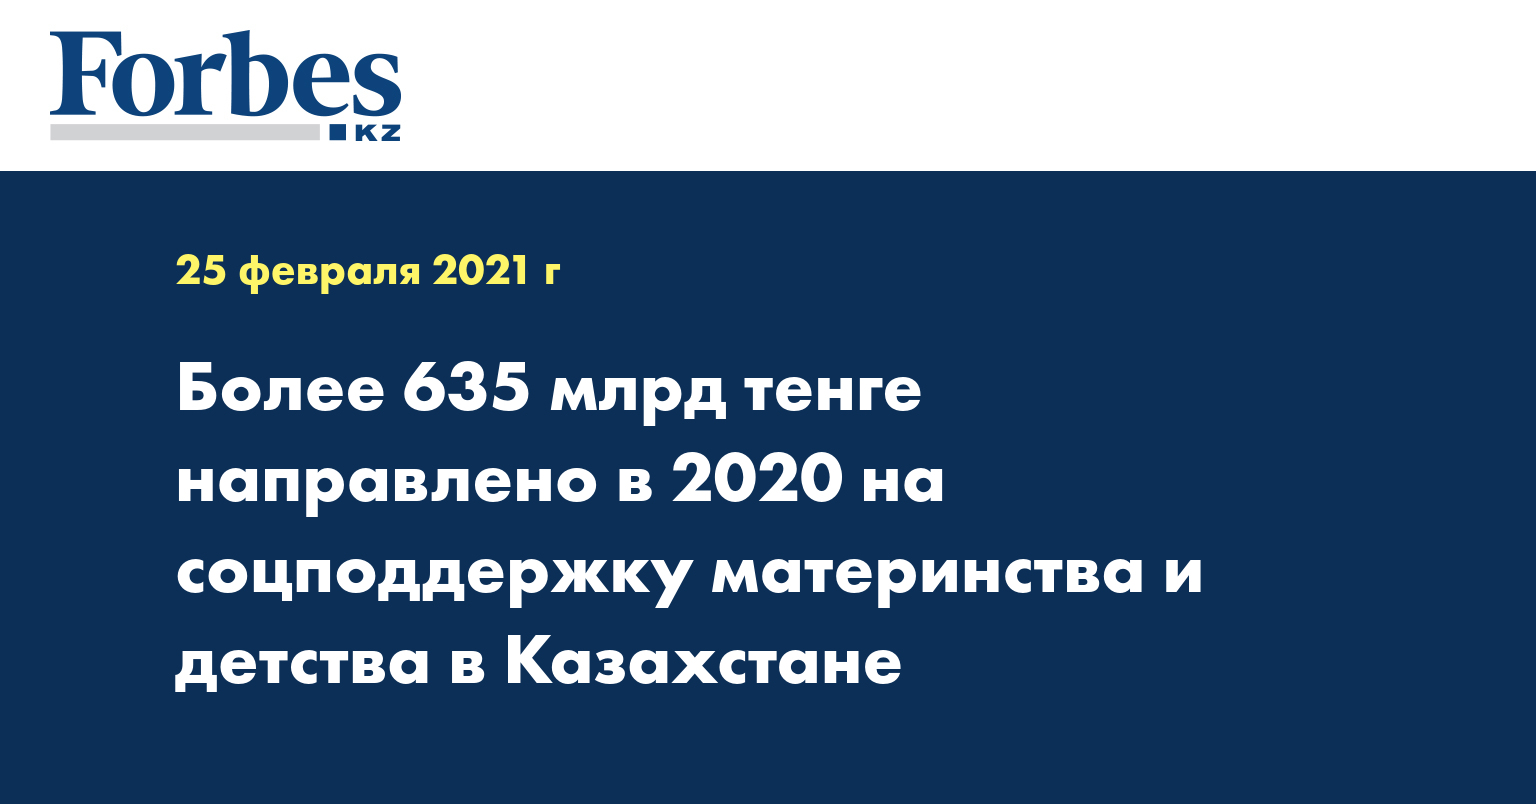 Более 635 млрд тенге направлено в 2020 на соцподдержку материнства и детства в Казахстане